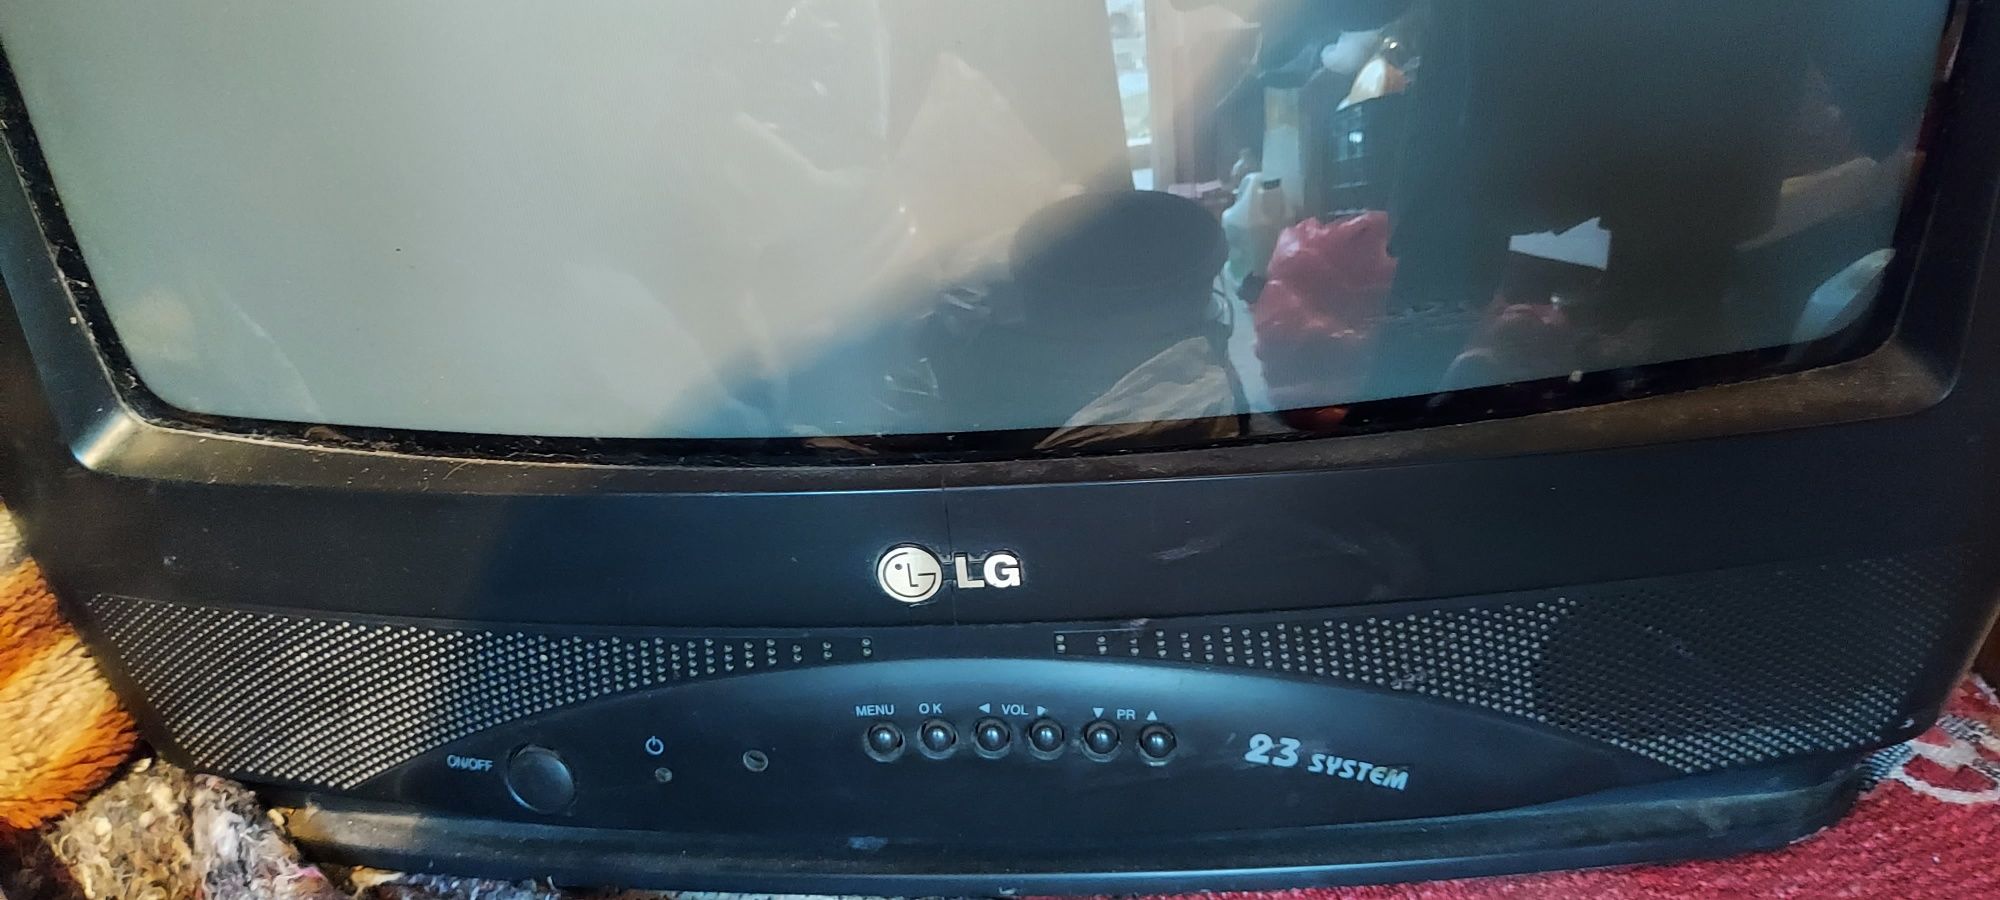 Телевизор LG хорошем состоянии